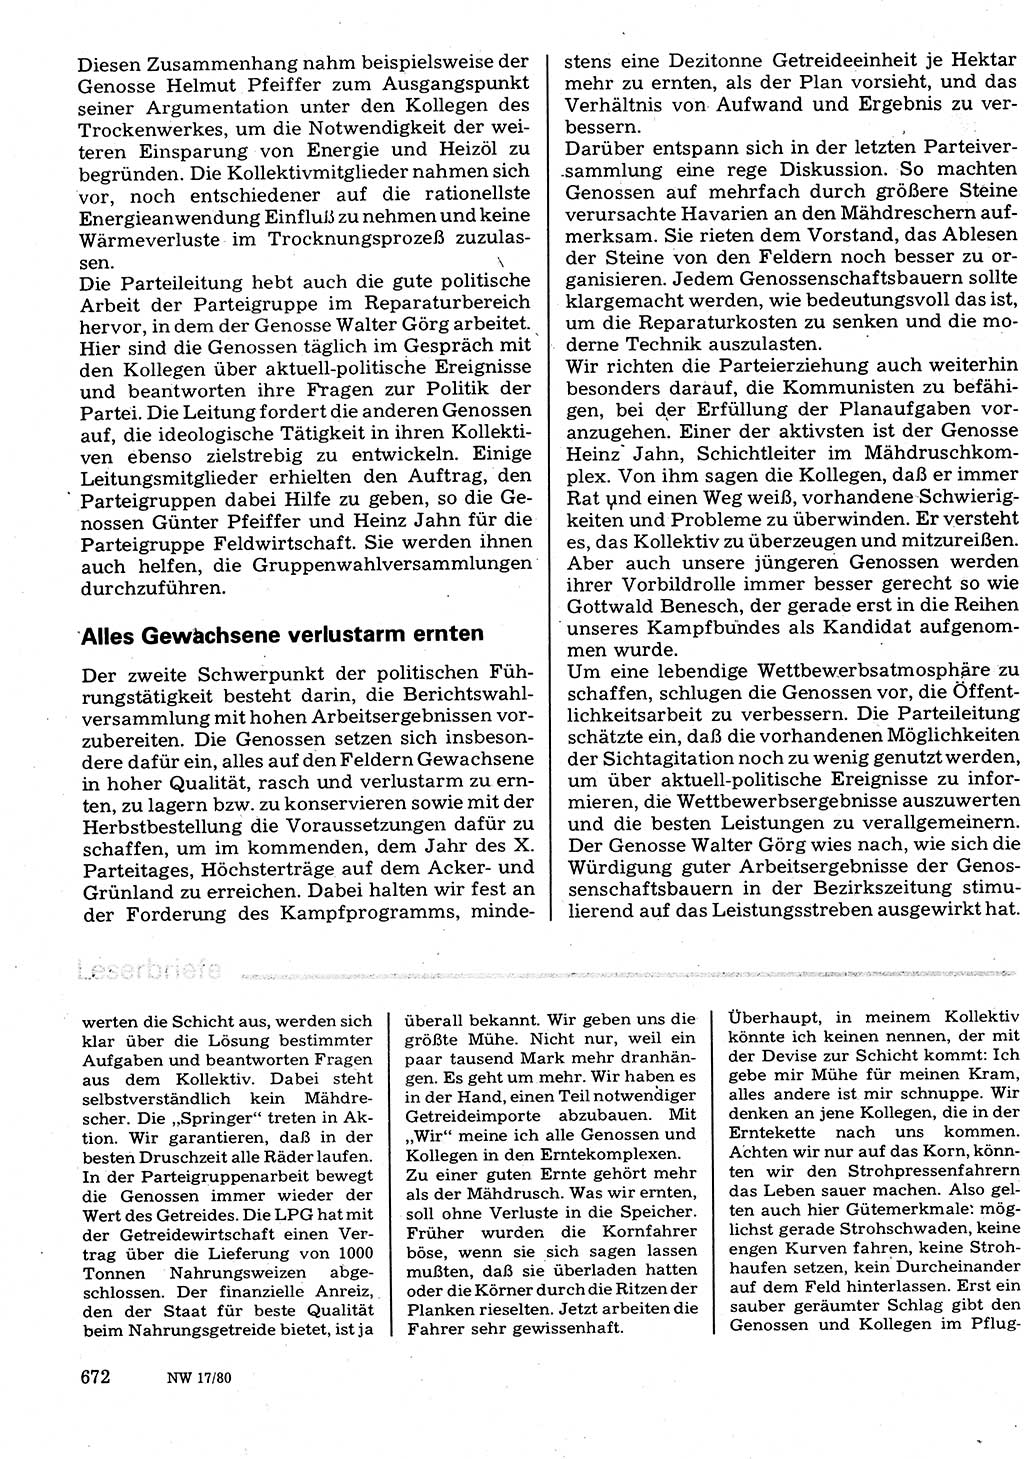 Neuer Weg (NW), Organ des Zentralkomitees (ZK) der SED (Sozialistische Einheitspartei Deutschlands) für Fragen des Parteilebens, 35. Jahrgang [Deutsche Demokratische Republik (DDR)] 1980, Seite 672 (NW ZK SED DDR 1980, S. 672)